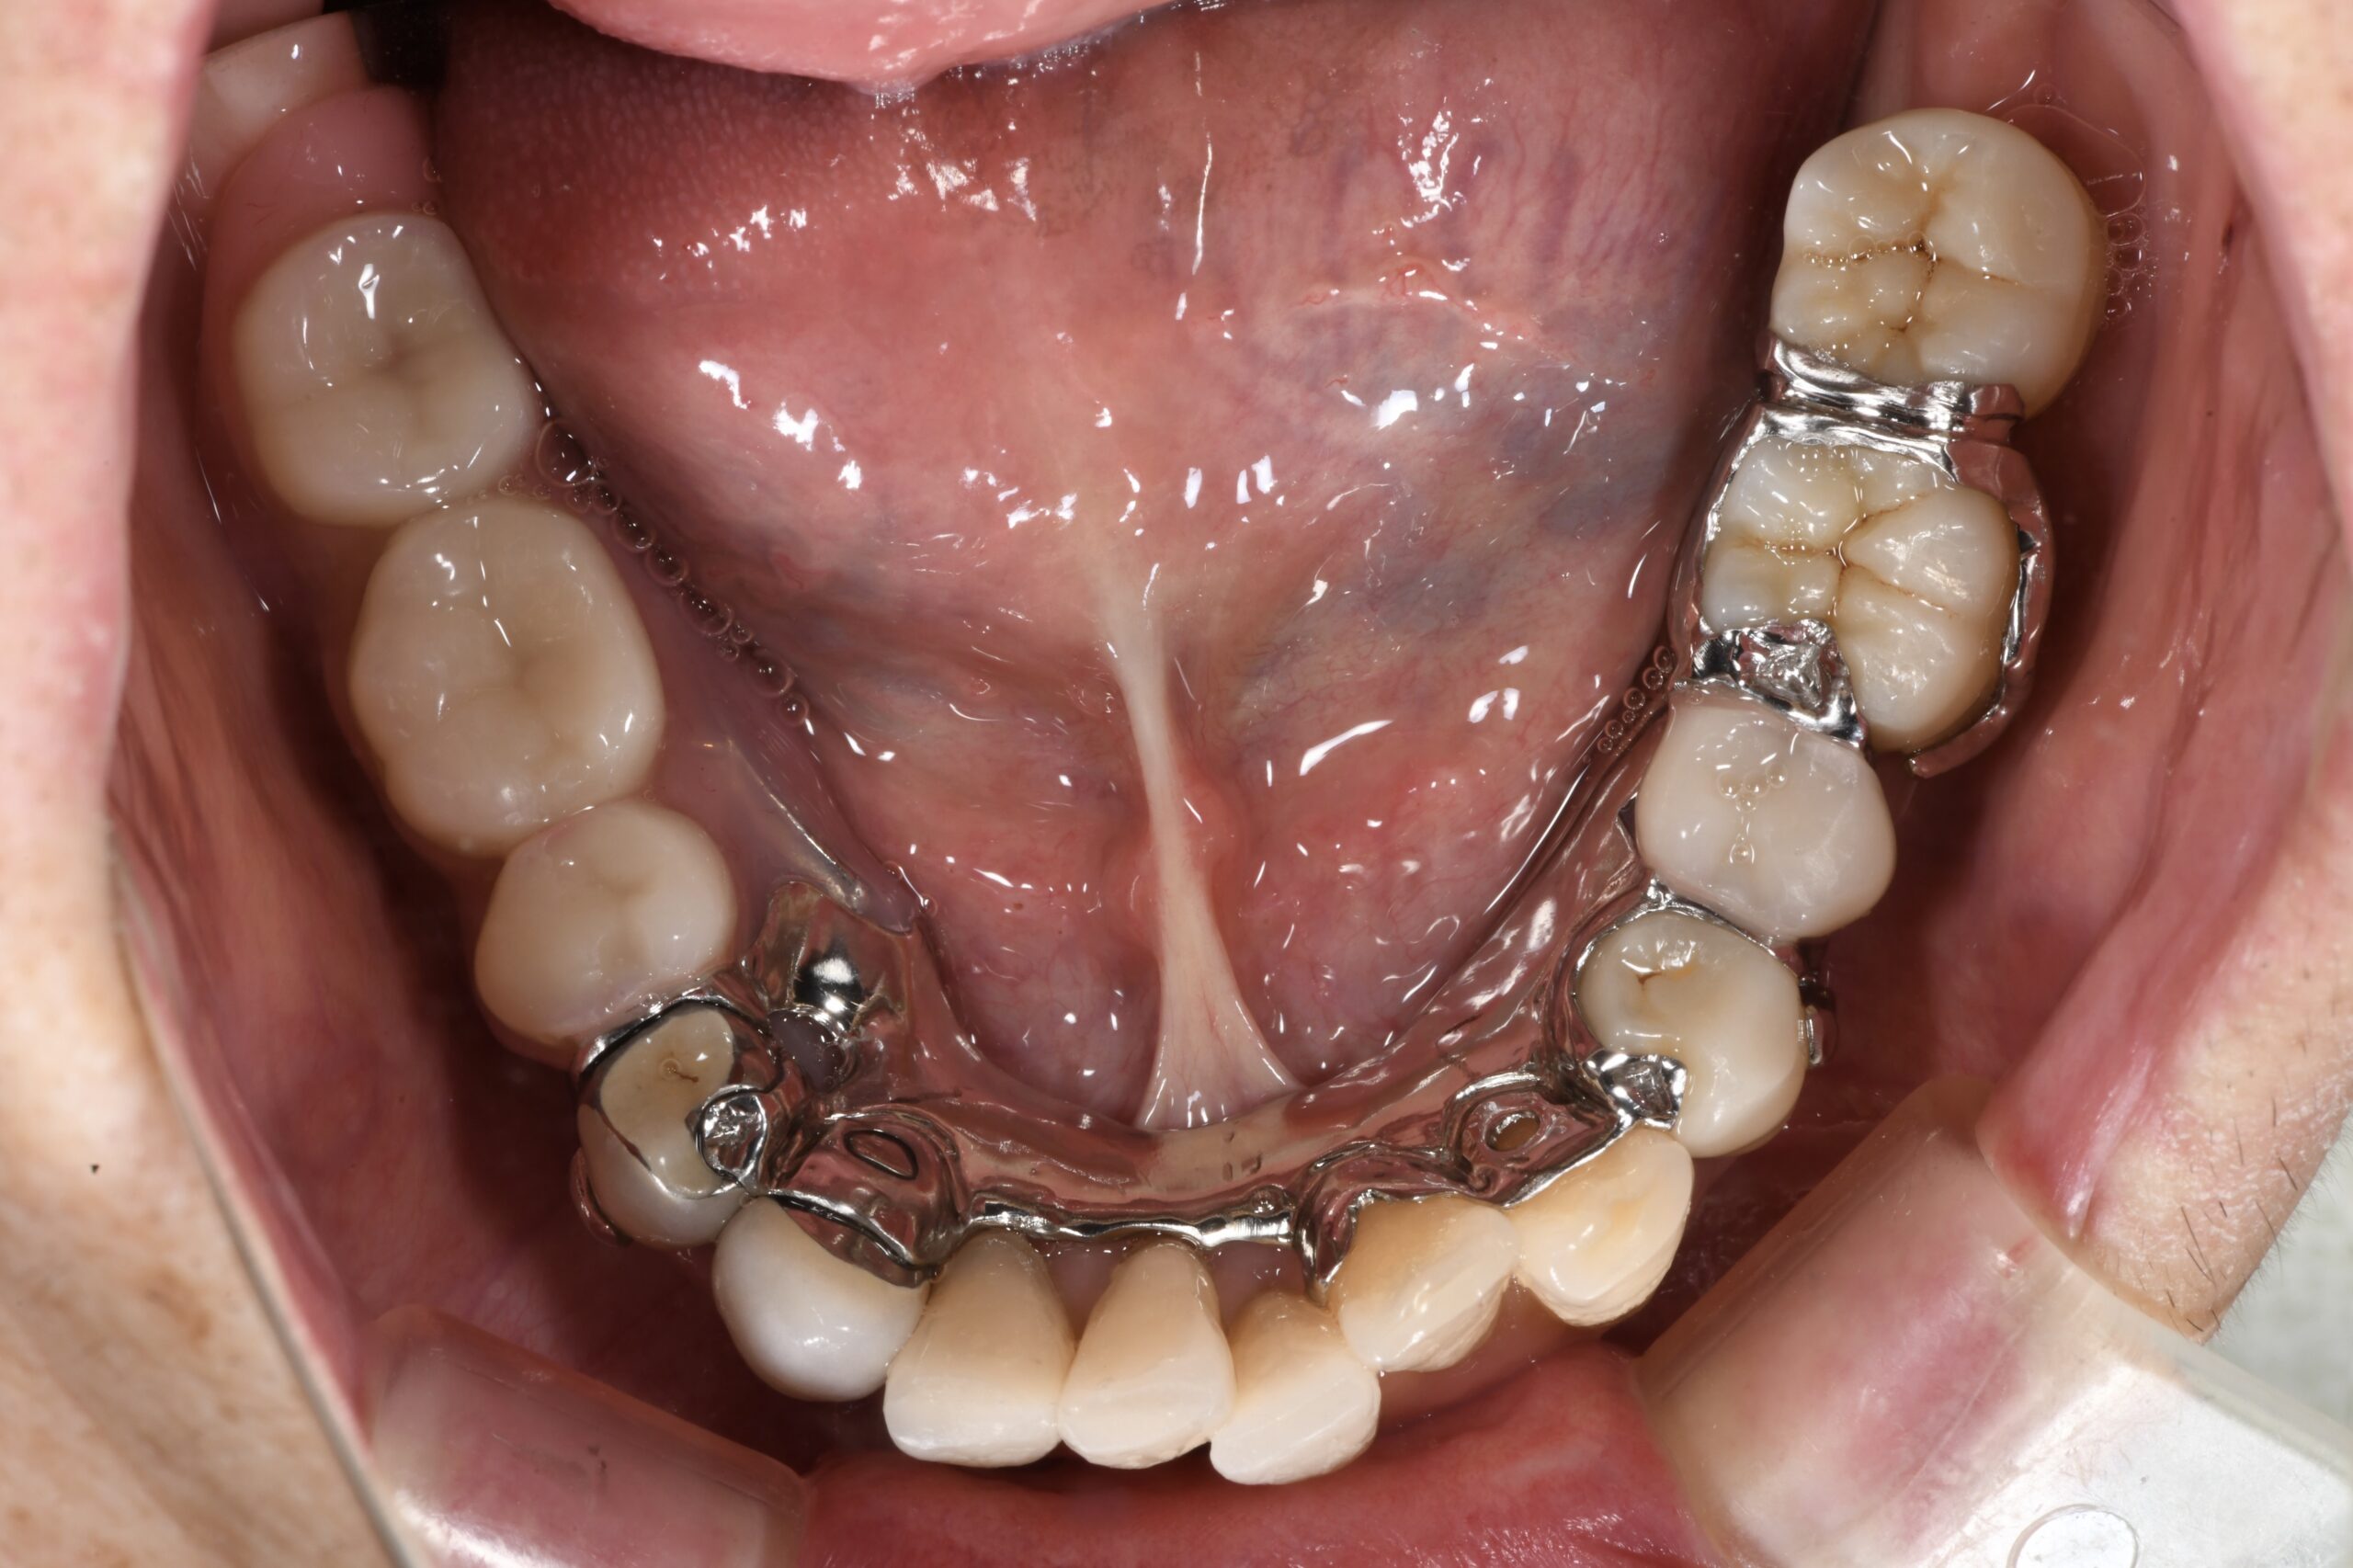 年齢的にインプラントが追加でできない方によく噛める入れ歯を作成した事例